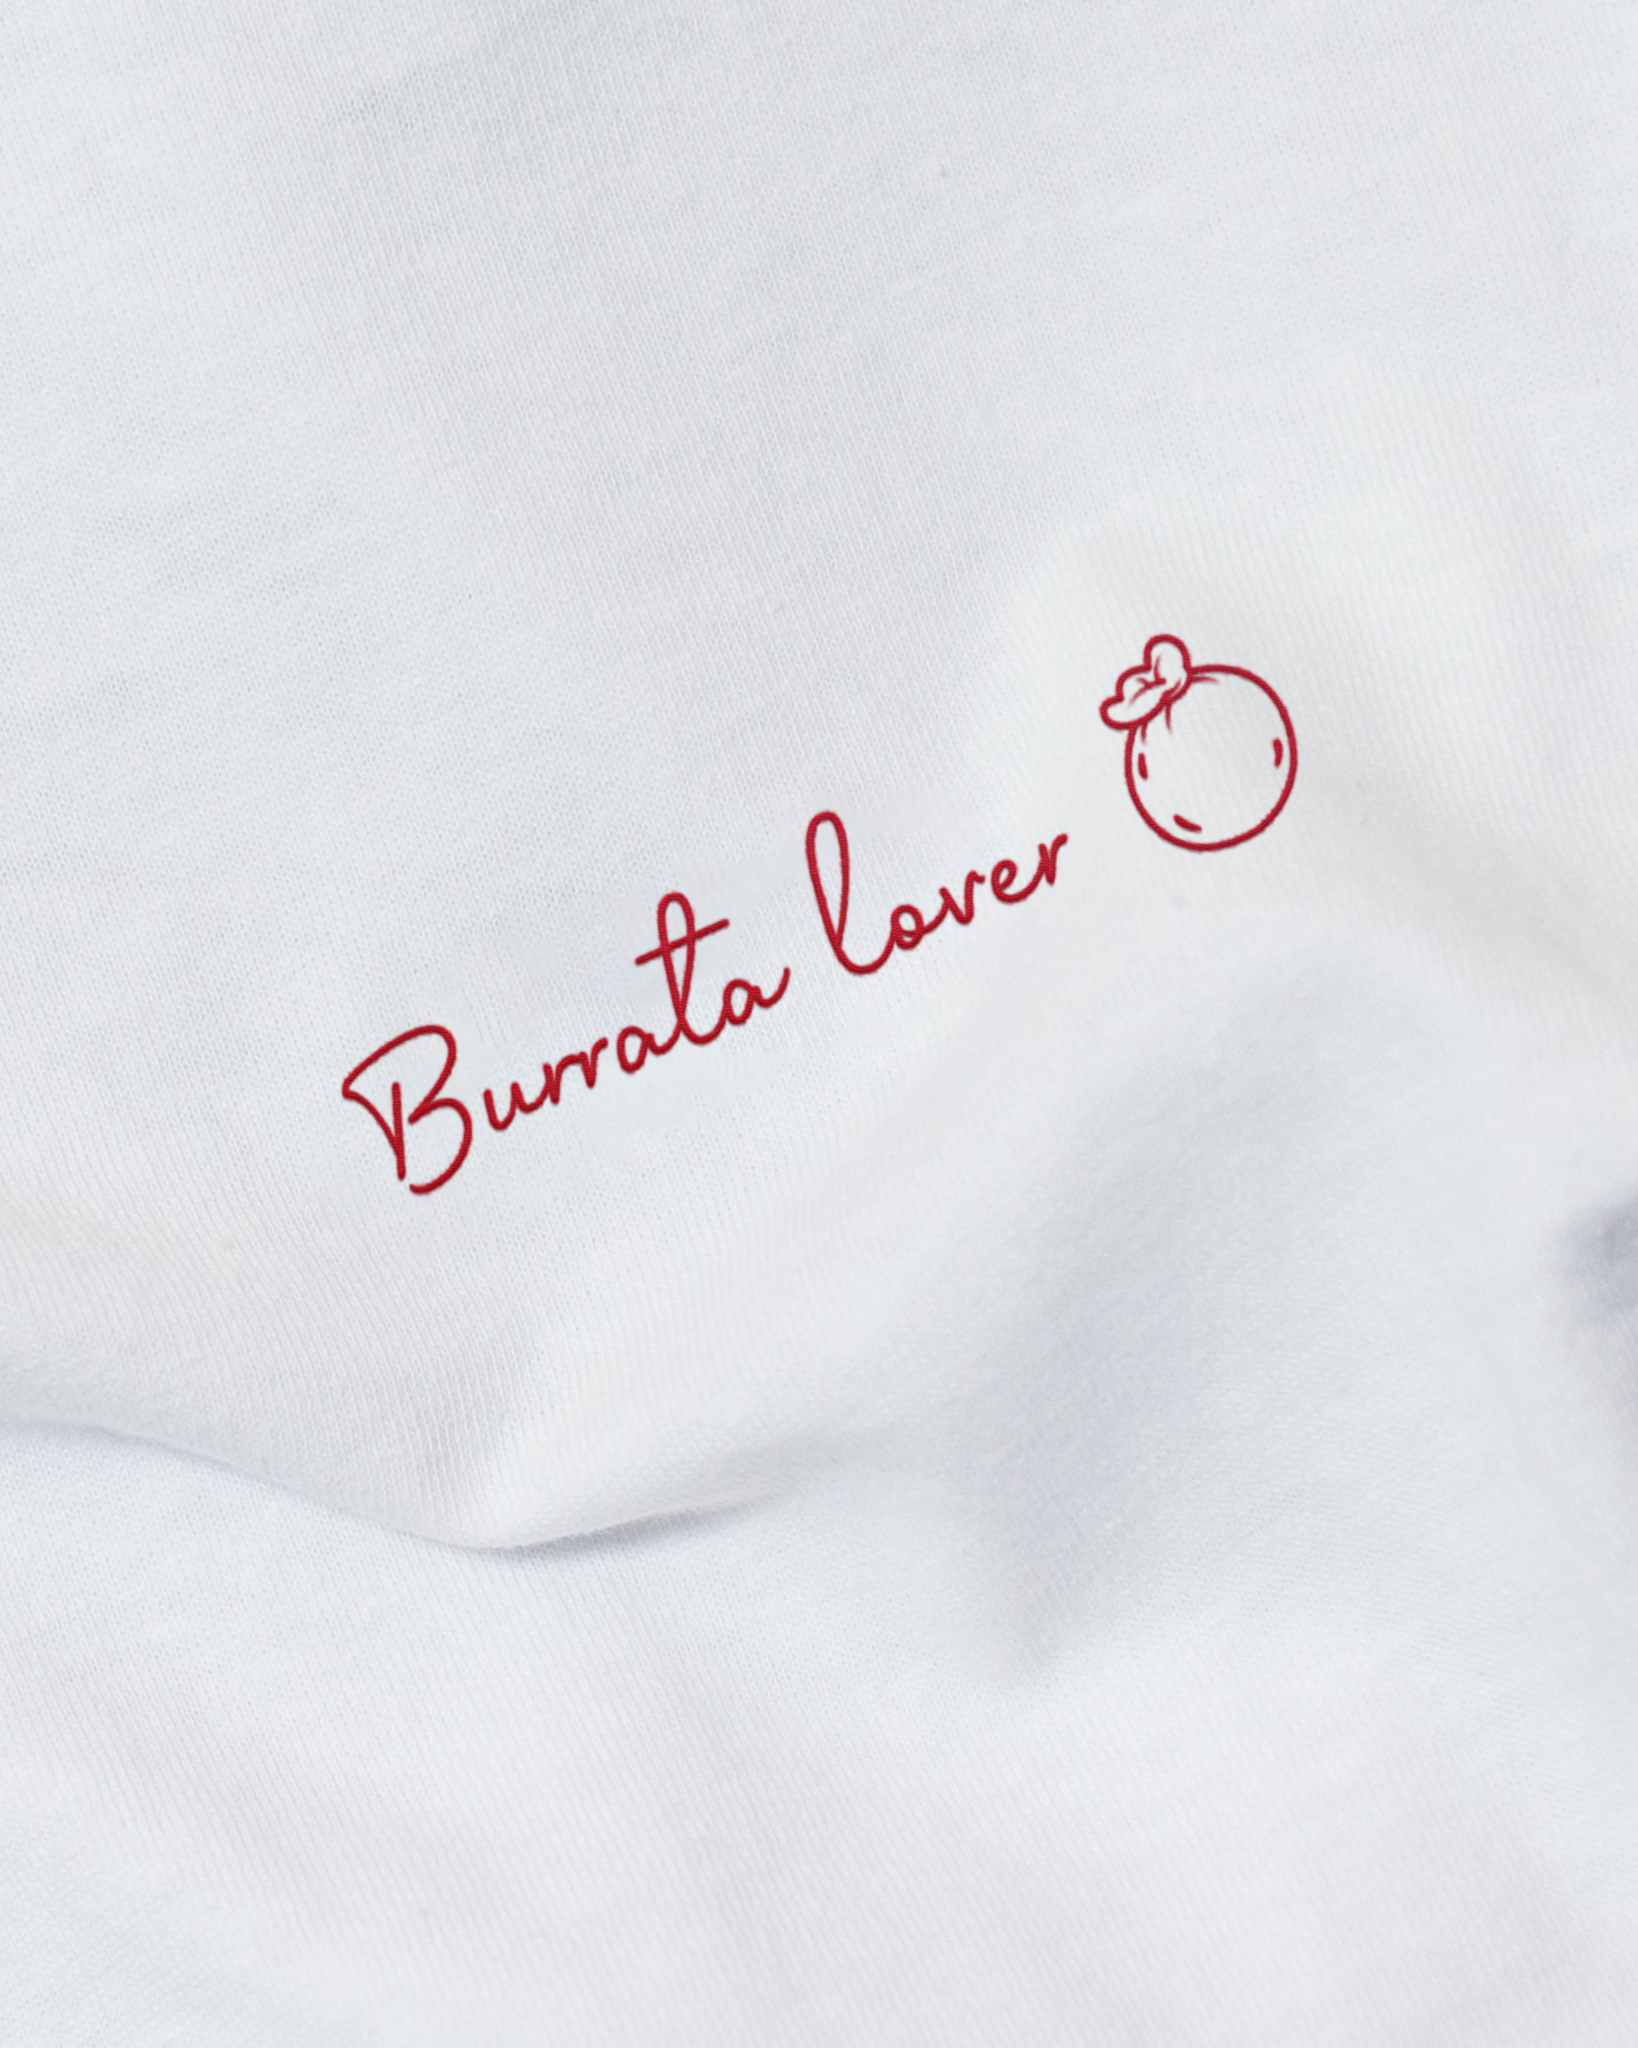 T-shirt Bio unisexe - Burrata lover